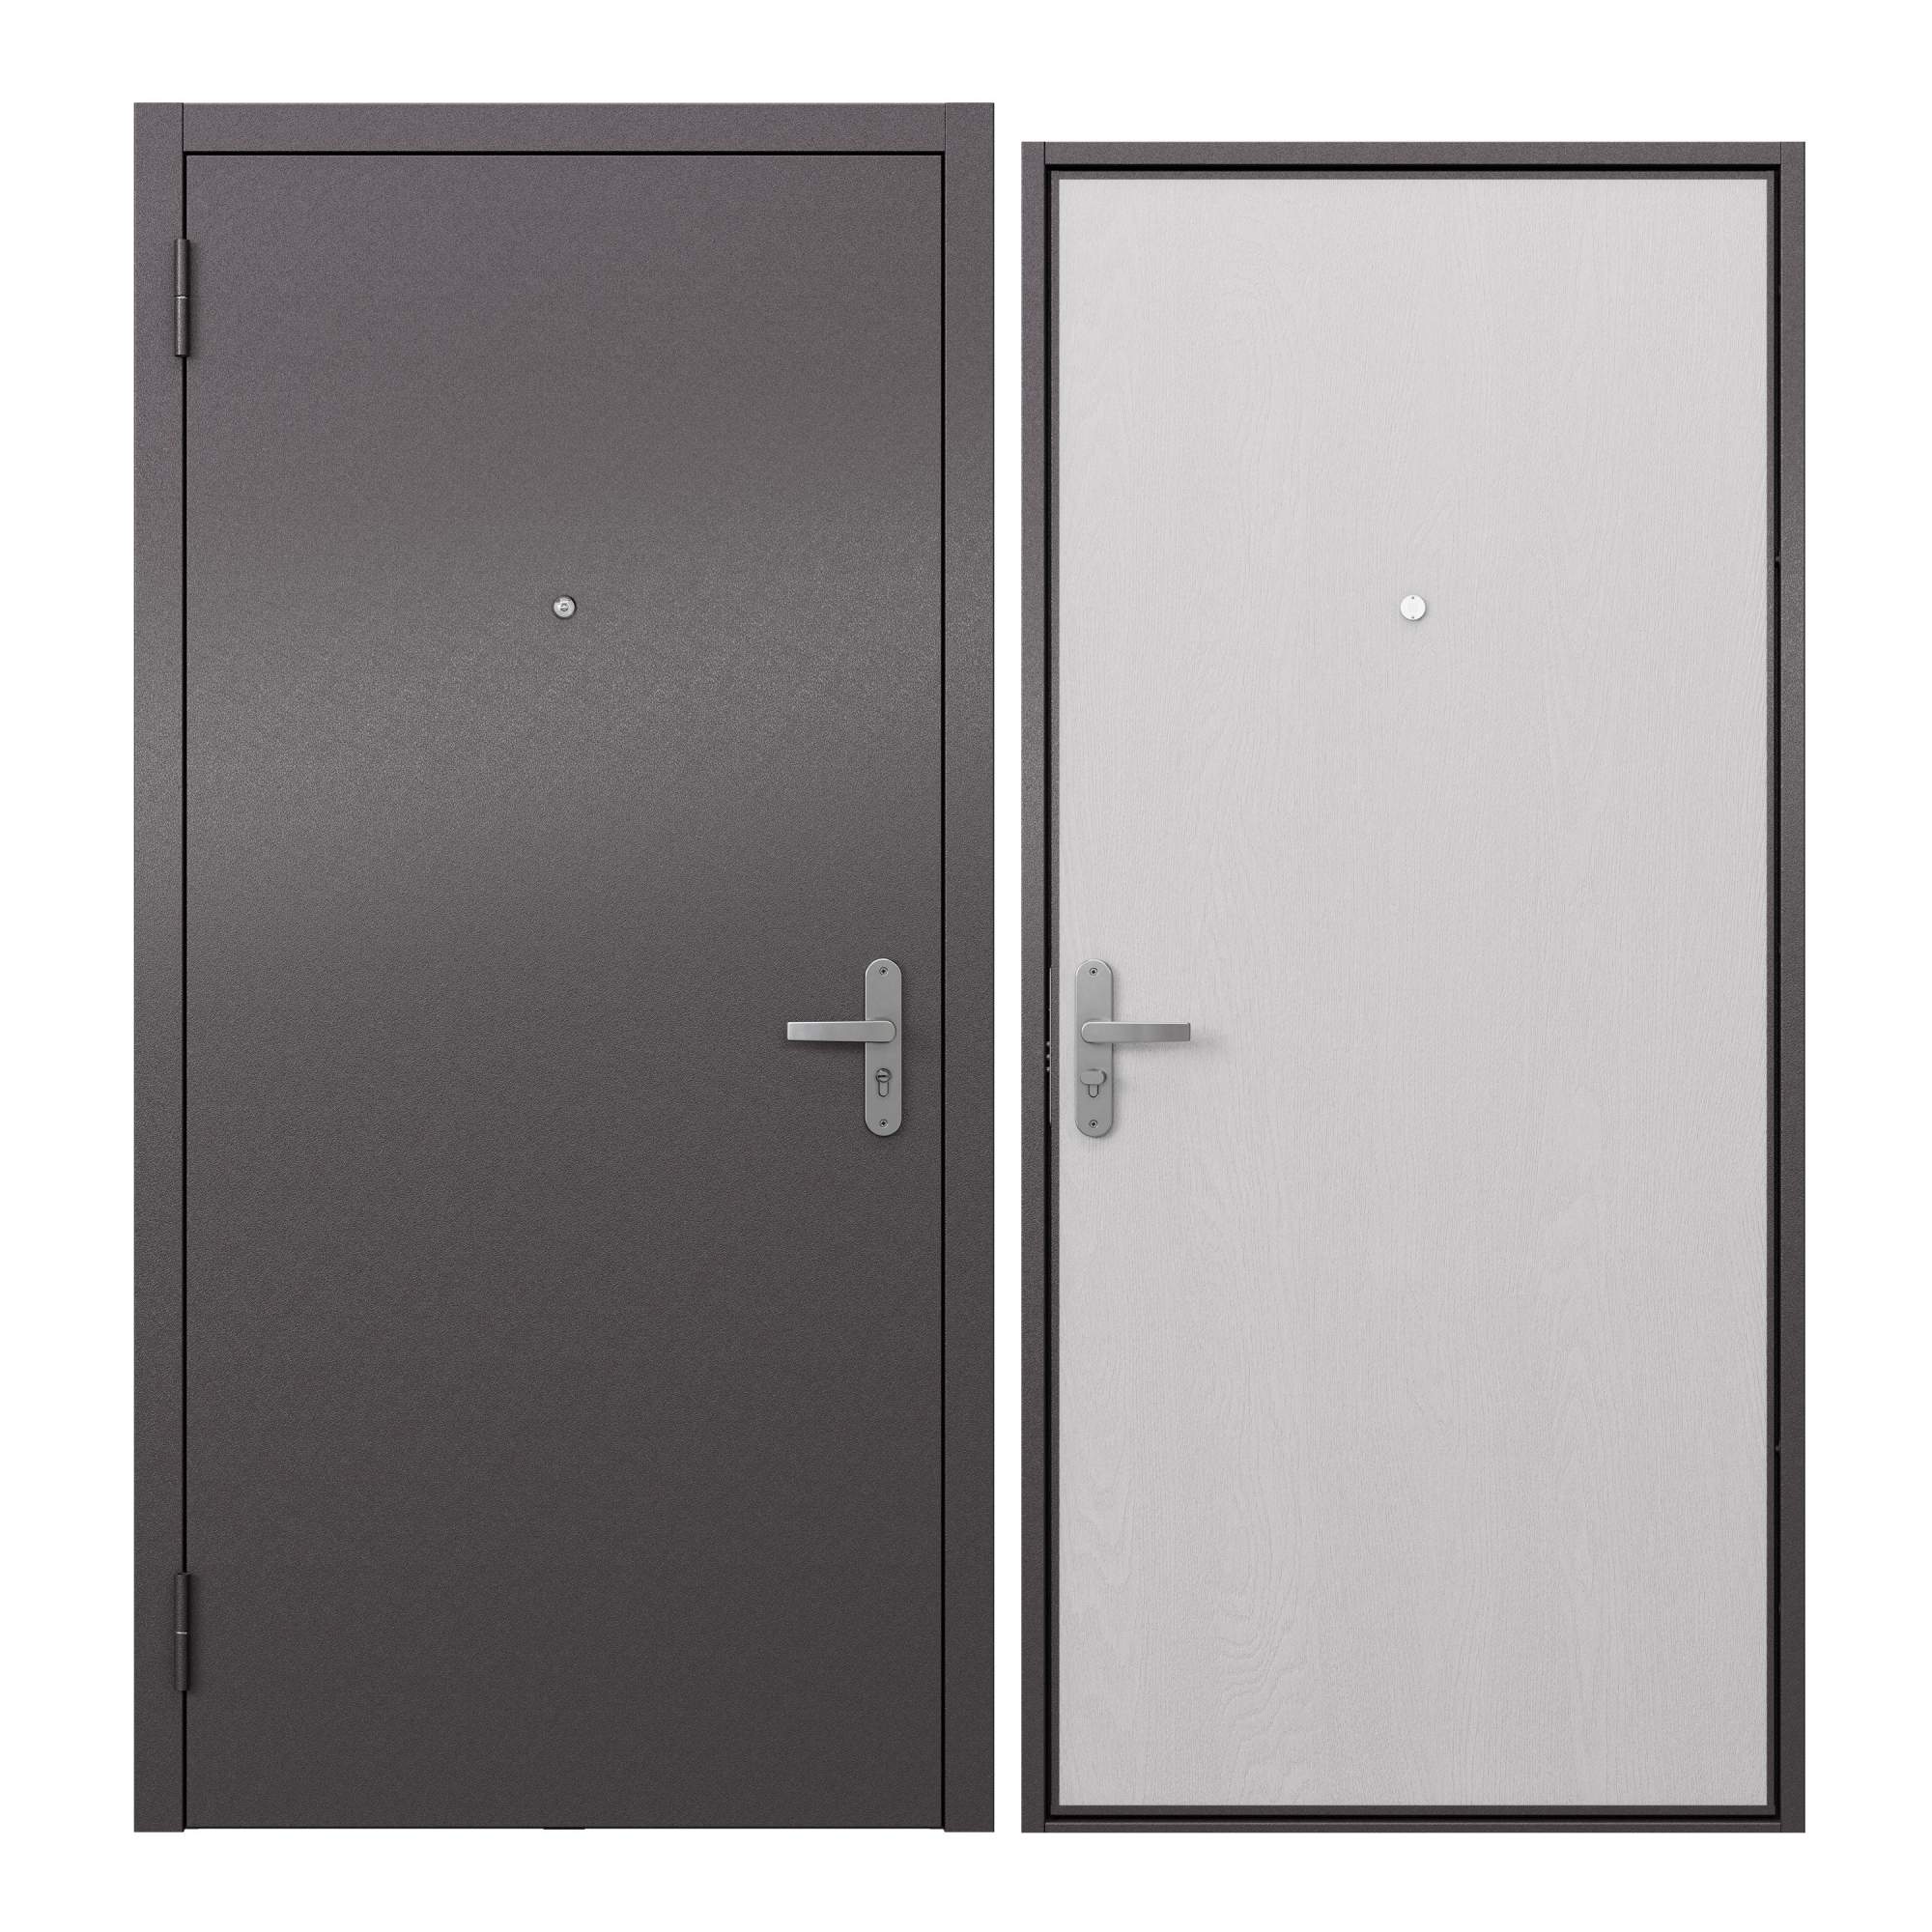 Дверь входная металлическая Proline для квартиры Terminal A 860х2050, левая дверь входная buldoors марко левая букле шоколад дуб шале натуральный со стеклом 860х2050 мм